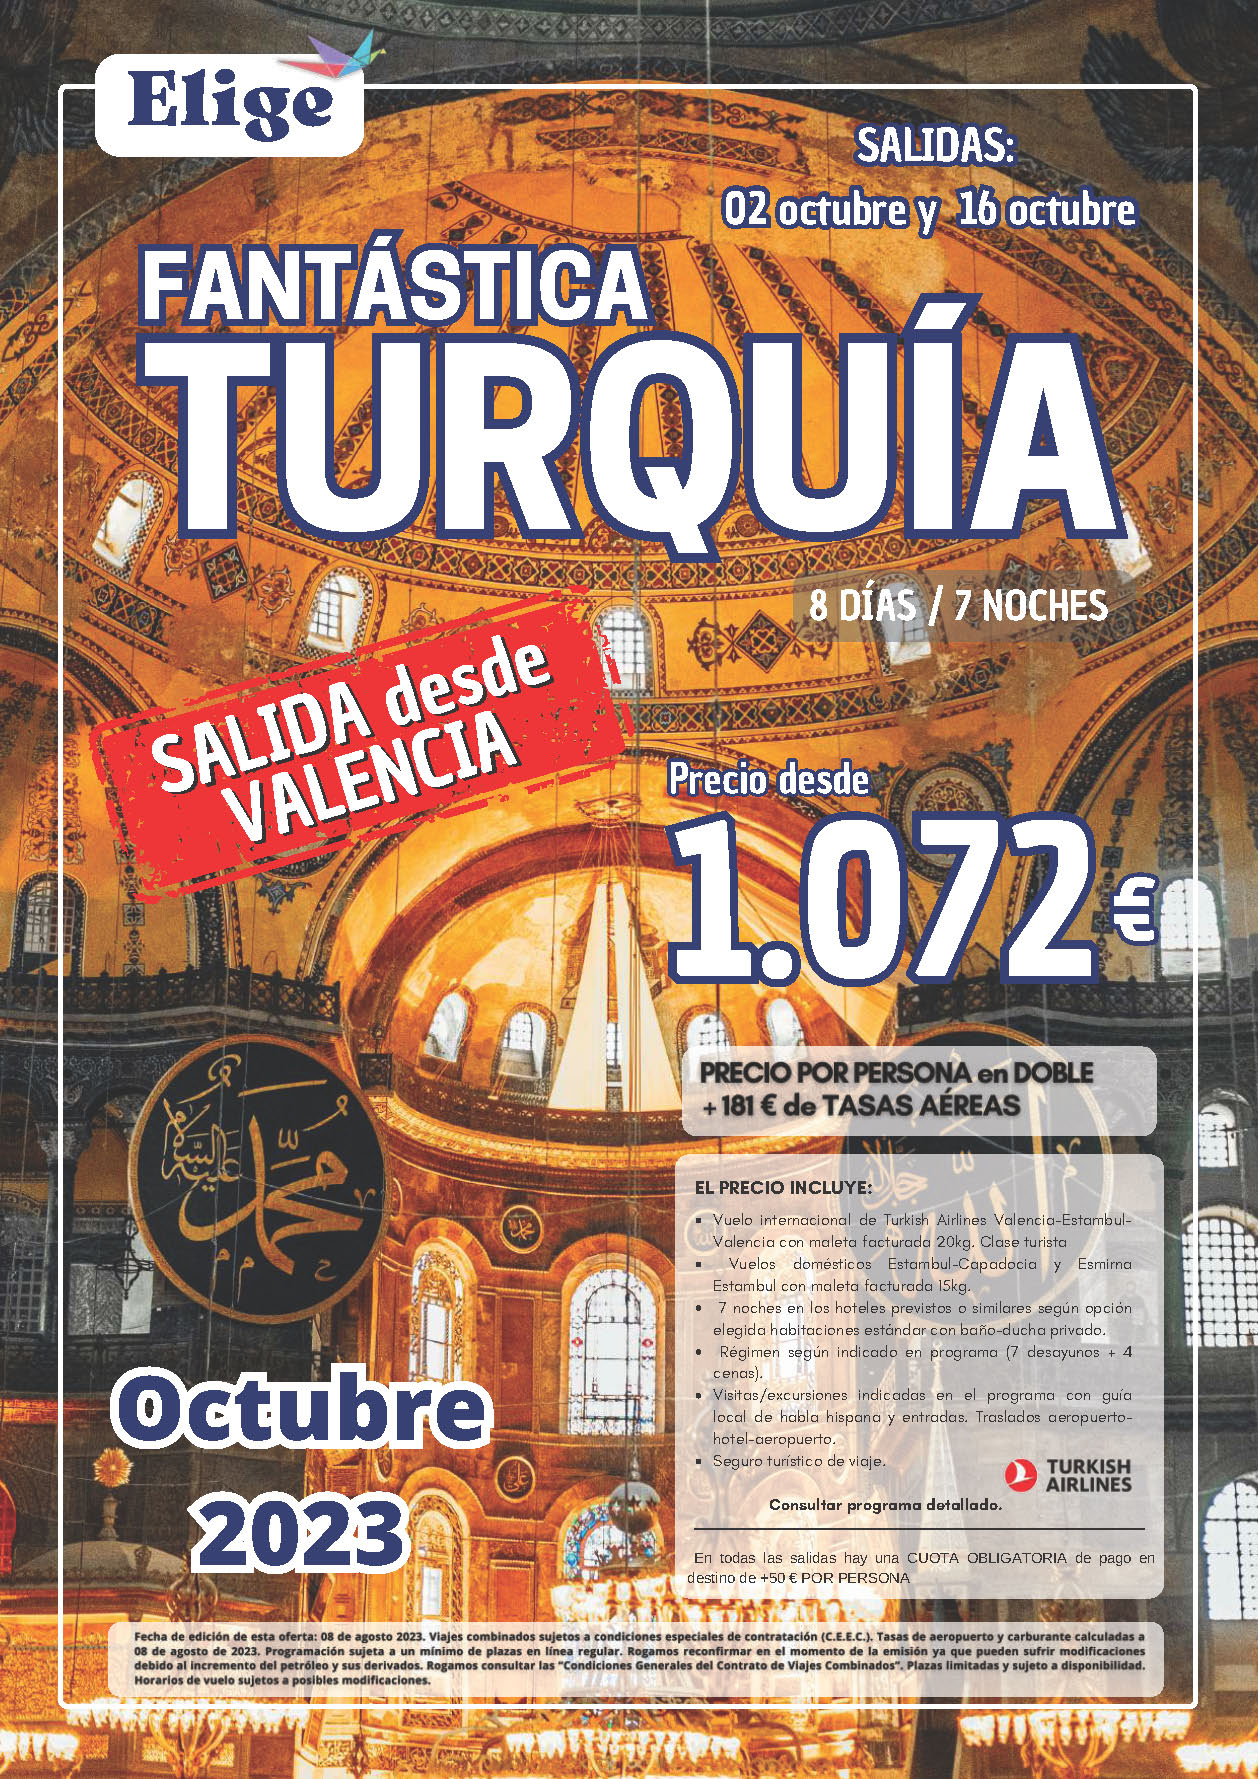 Oferta Elige tu Viaje circuito Fantastica Turquia 8 dias salidas Octubre 2023 desde Valencia vuelos Turkish Airlines